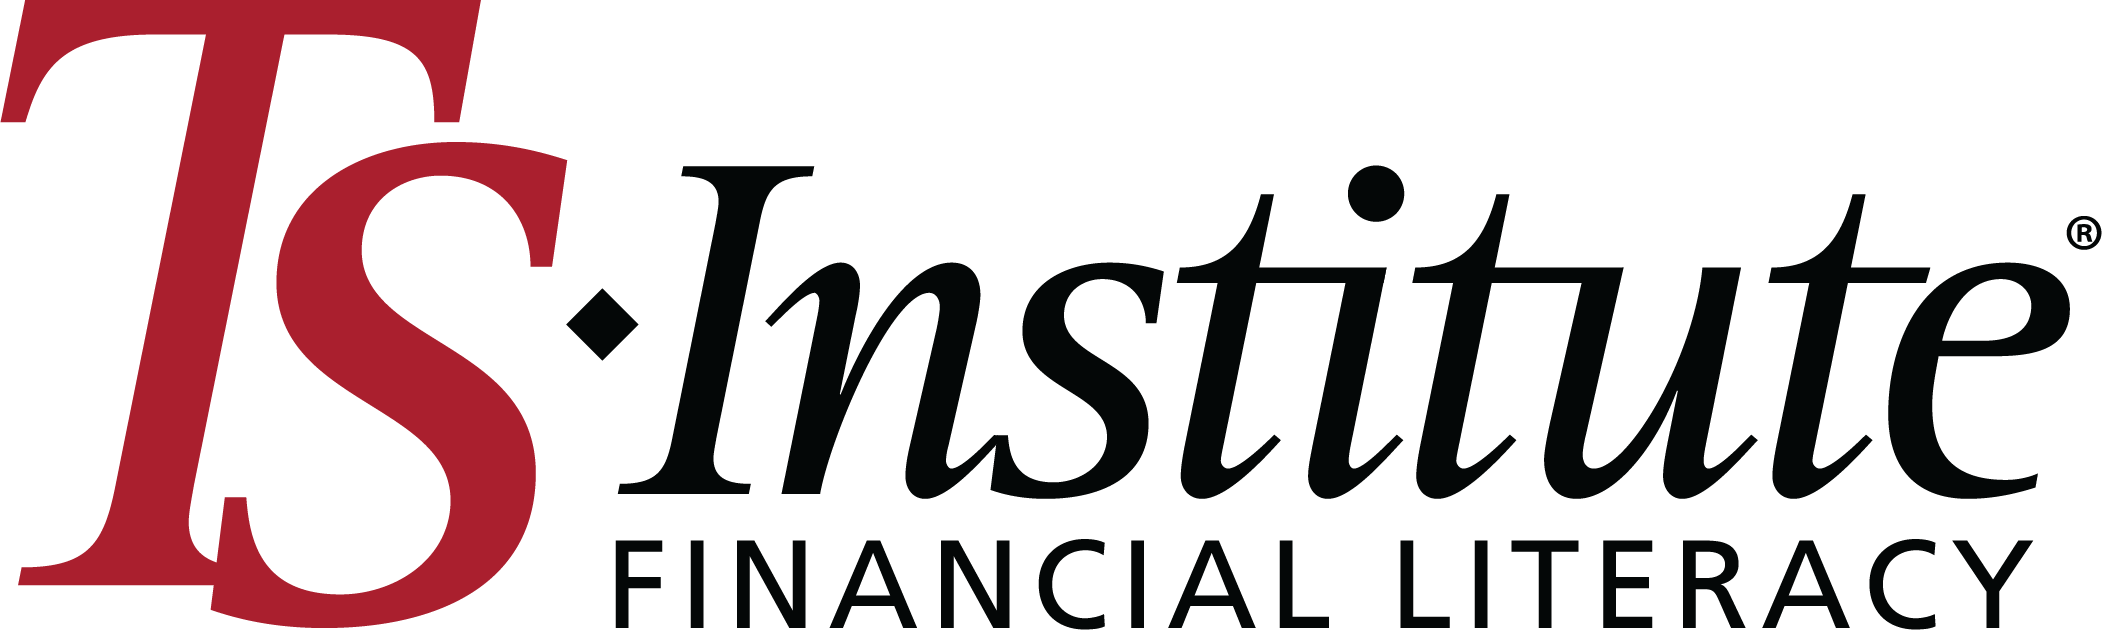 ts institute logo